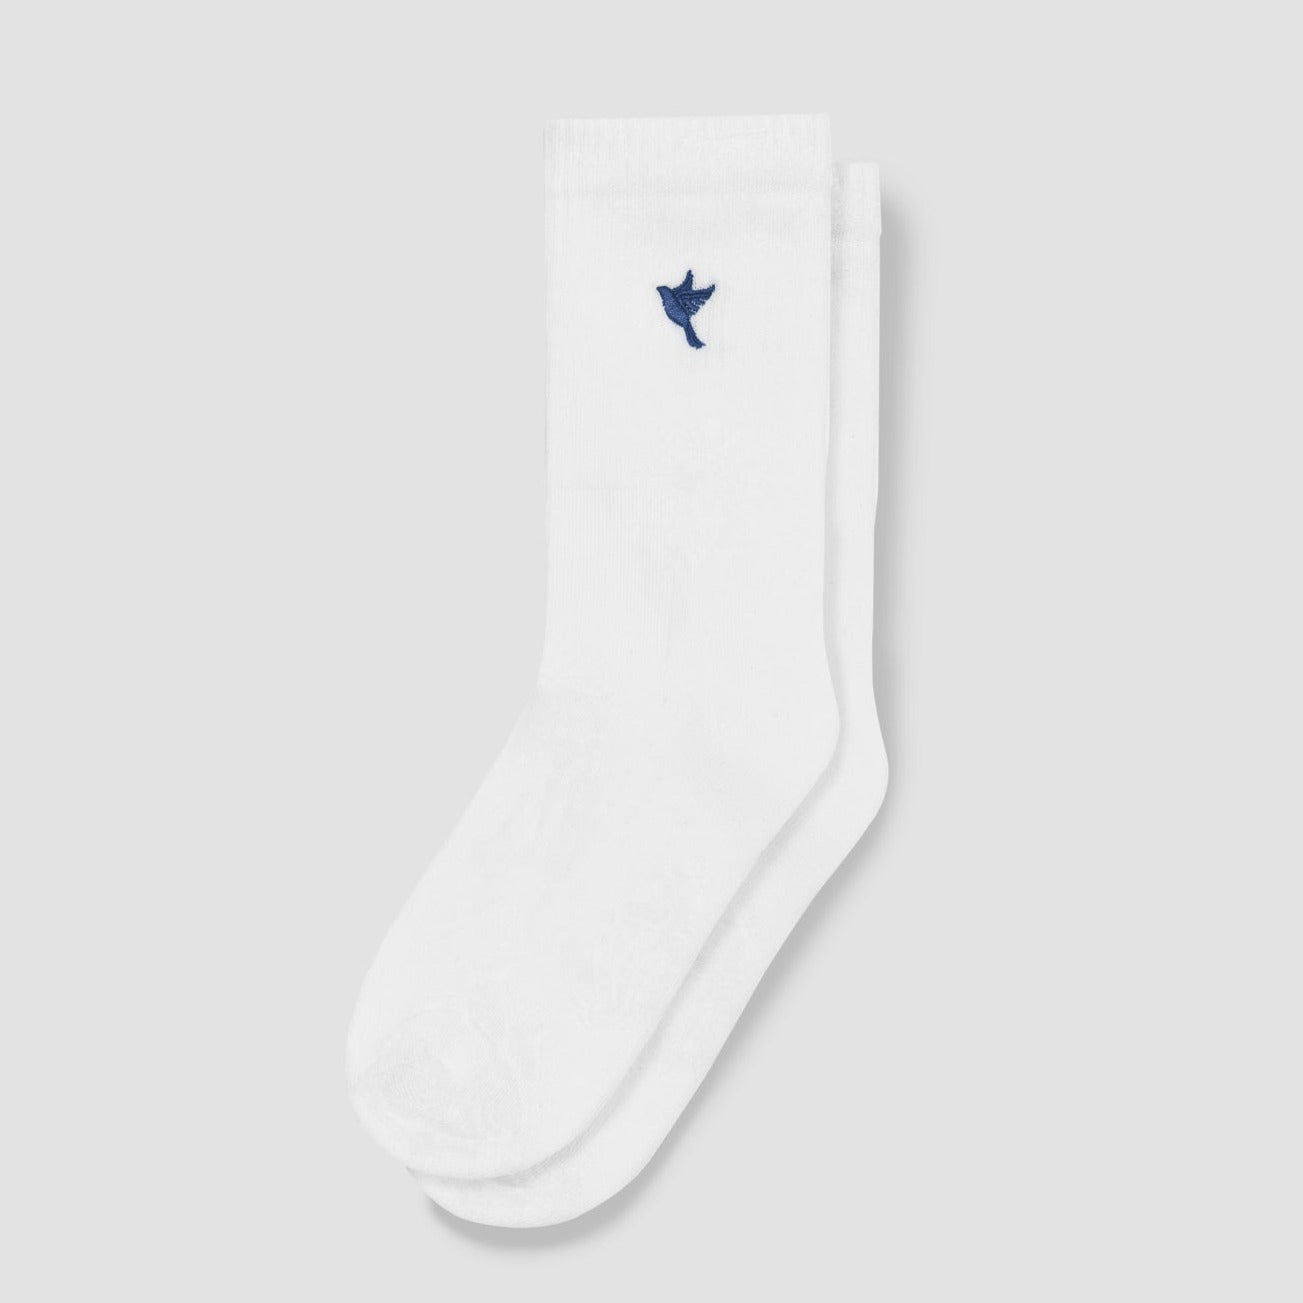 BY TPL ® Solo Socks White [Blue Dove] - The Proper Label ™